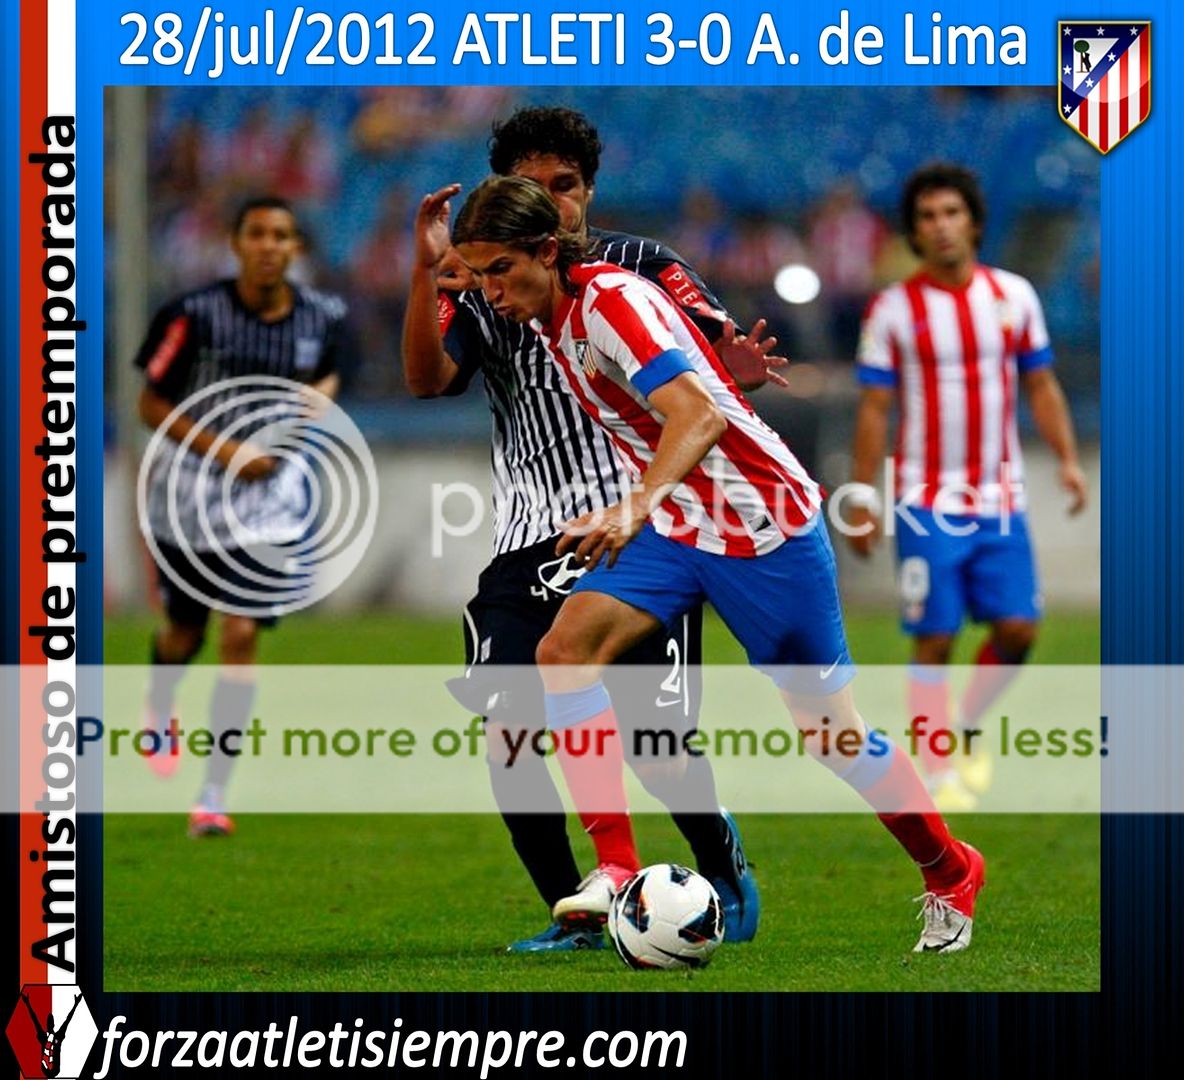 Atlético 3 - Alianza L. - El Atlético gana con claridad al Alianza de Lima 017Copiar-2